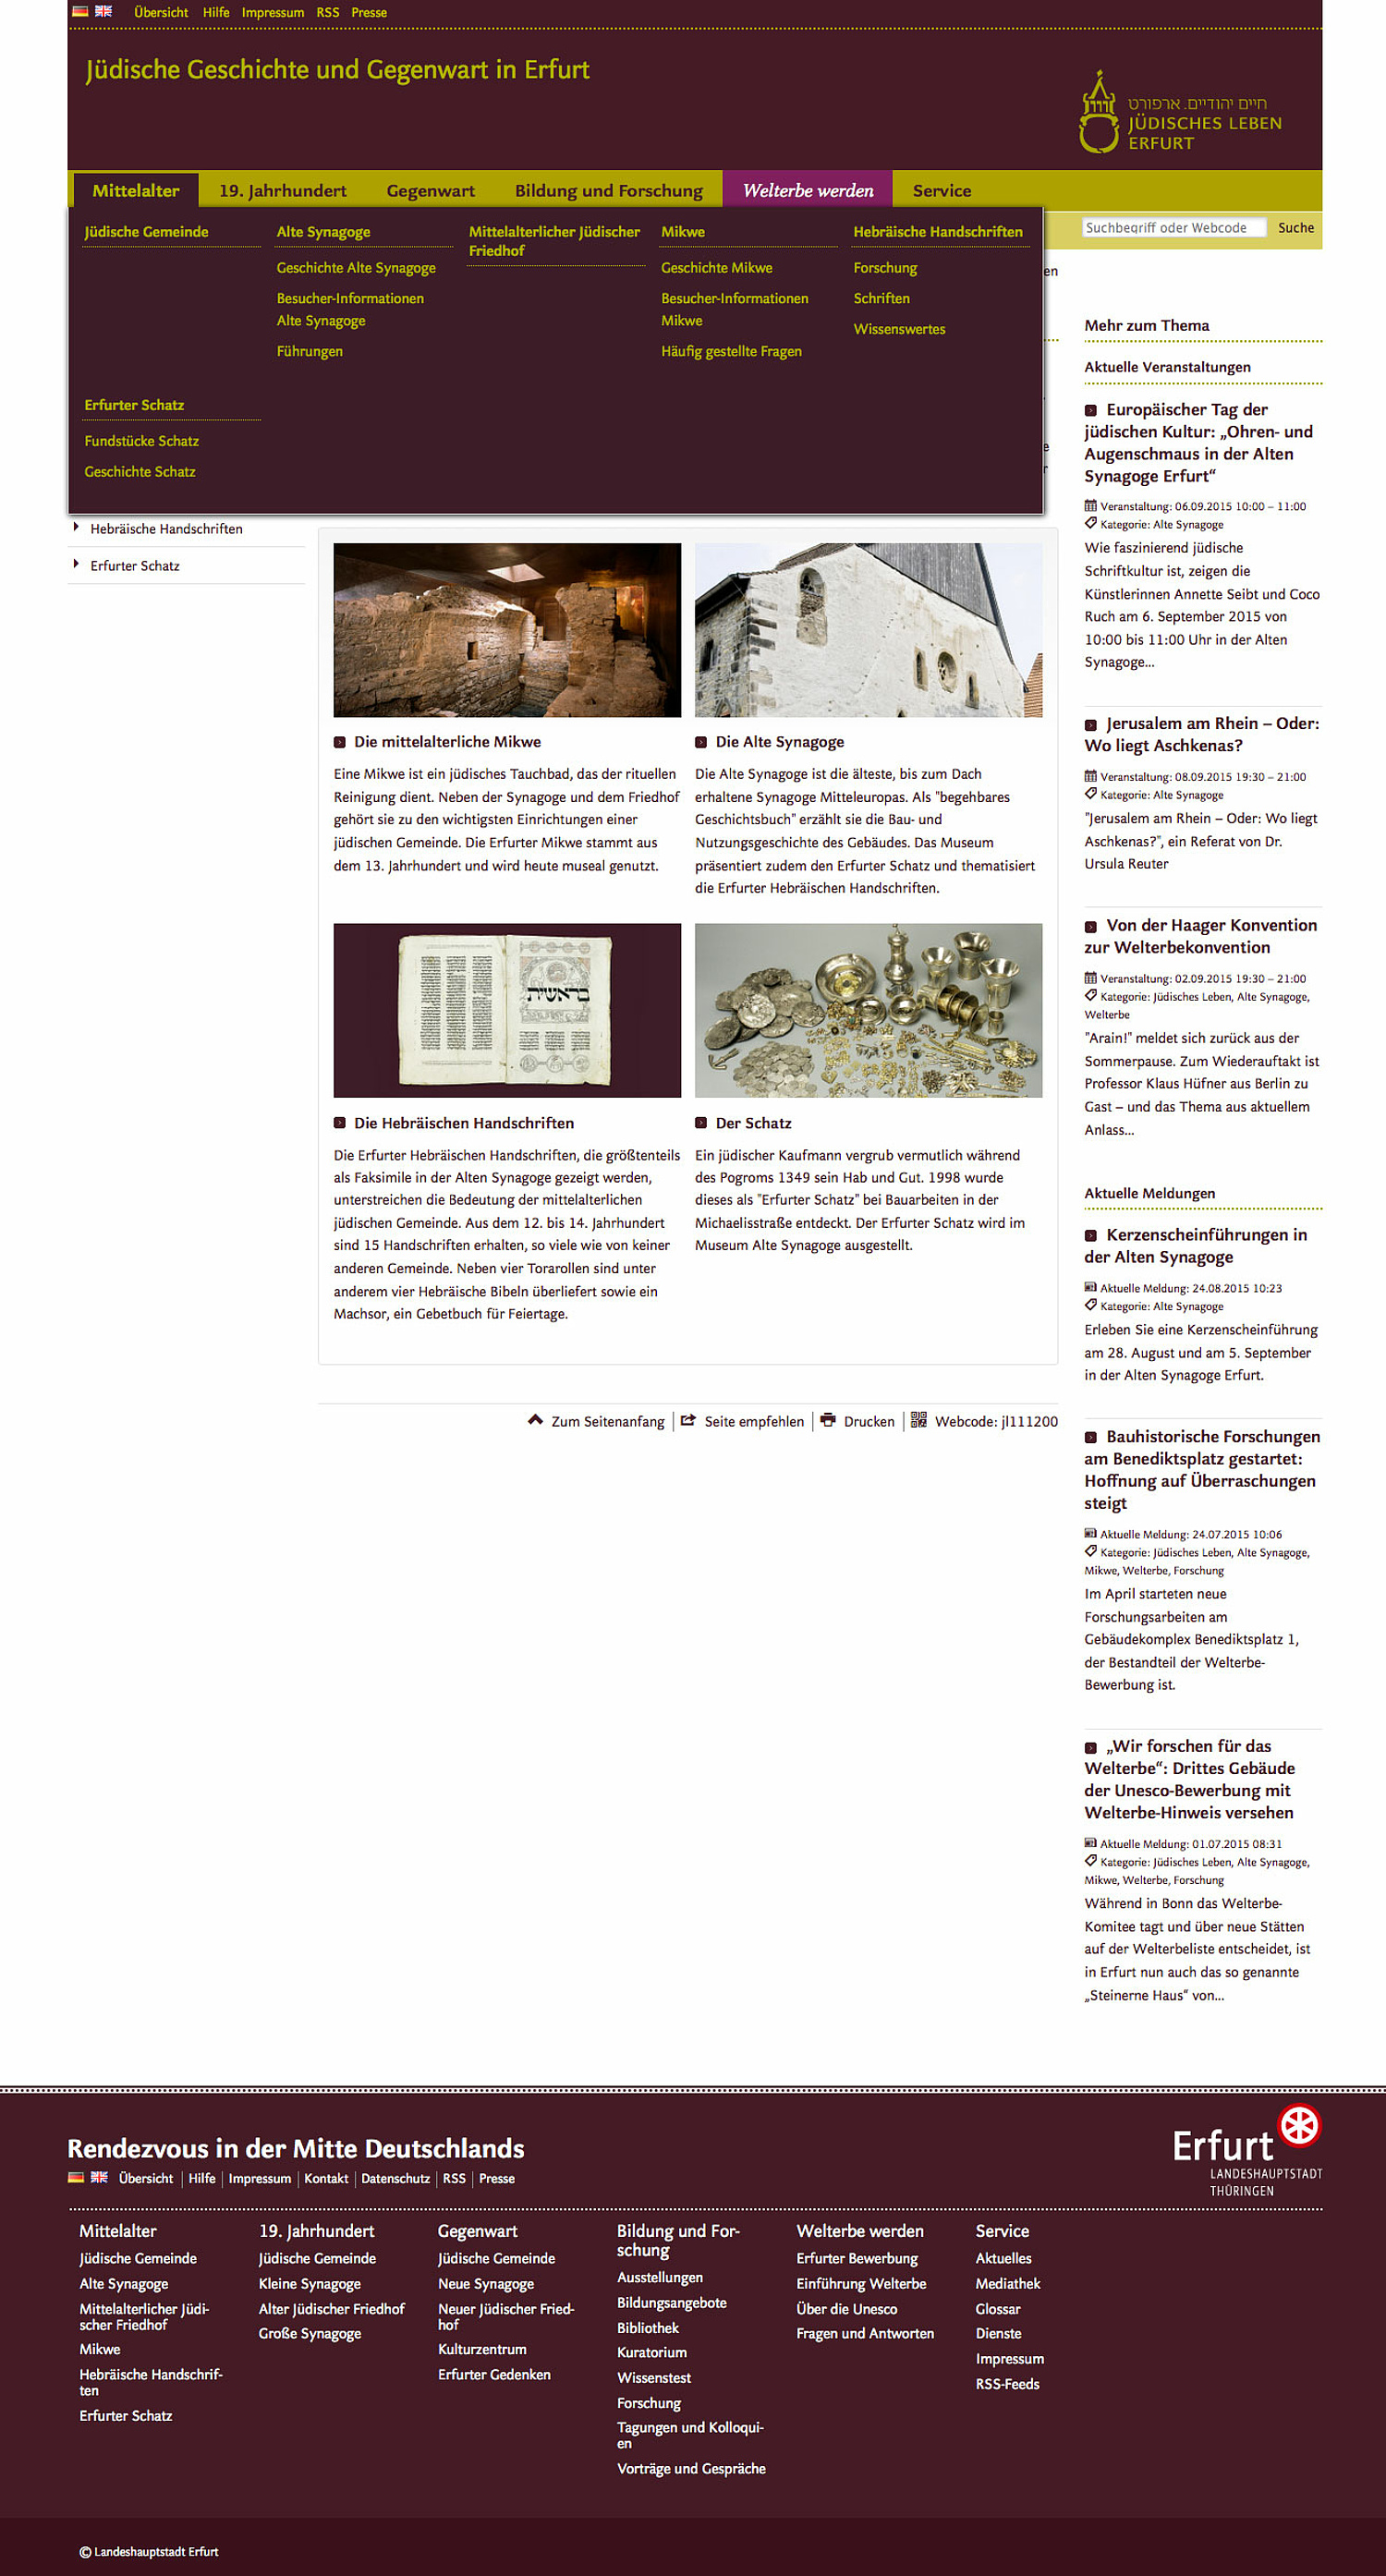 Das Bild zeigt die Rubrik "Mittelalter" der Webseite Jüdisches Leben Erfurt. (© Papenfuss | Atelier)